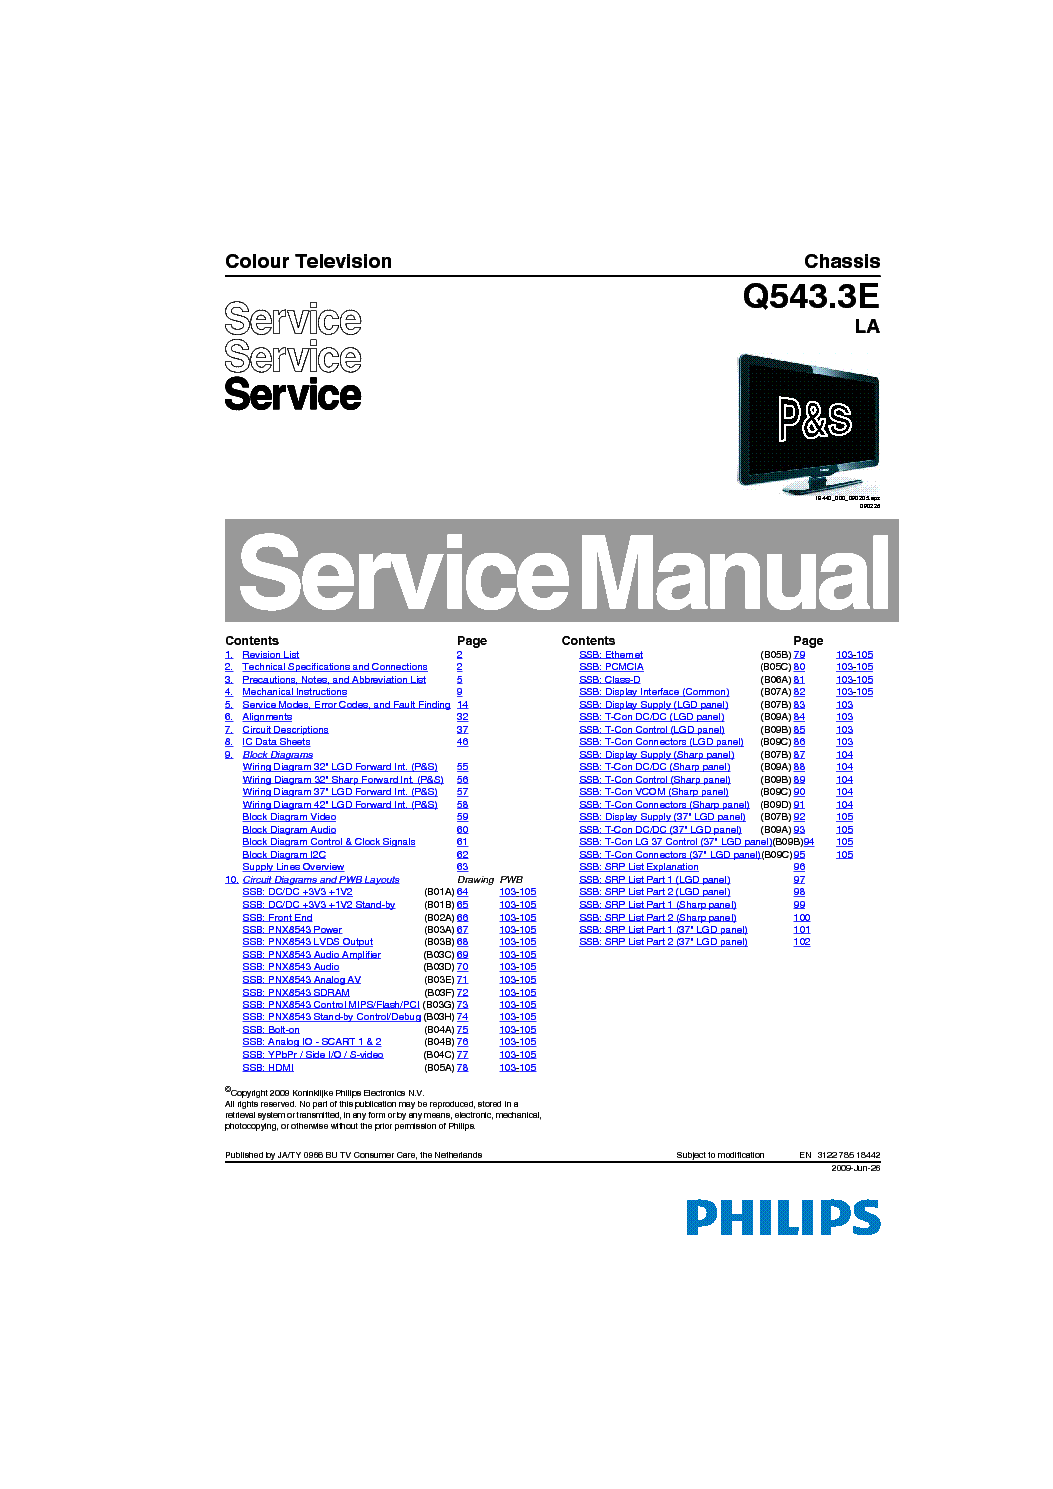 PHILIPS Q543.3E-LA SM service manual (1st page)